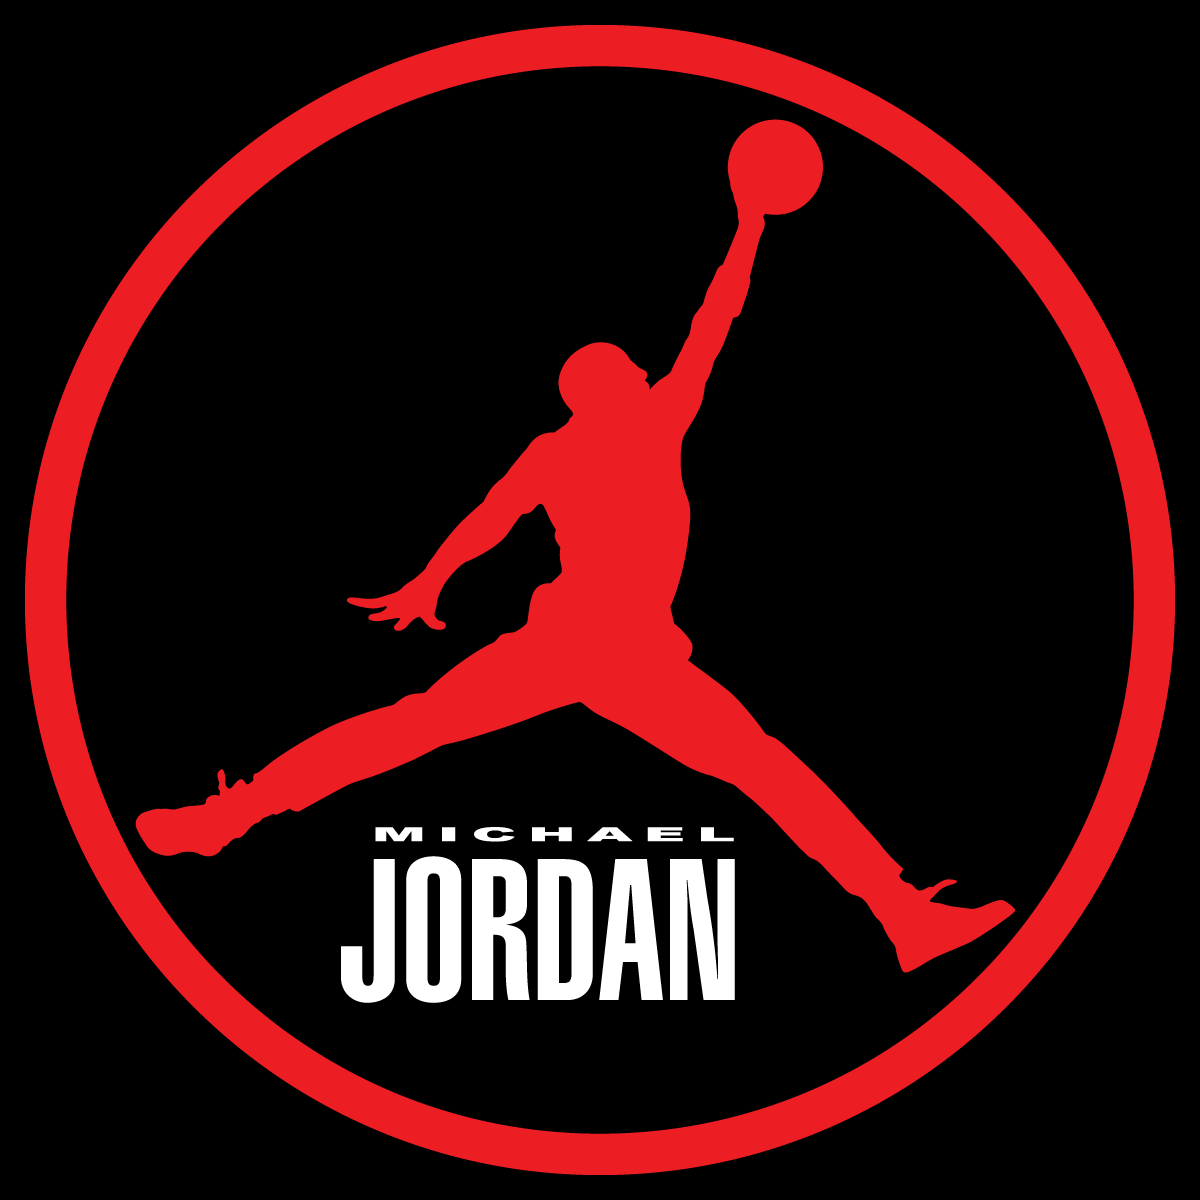 red air jordan logo